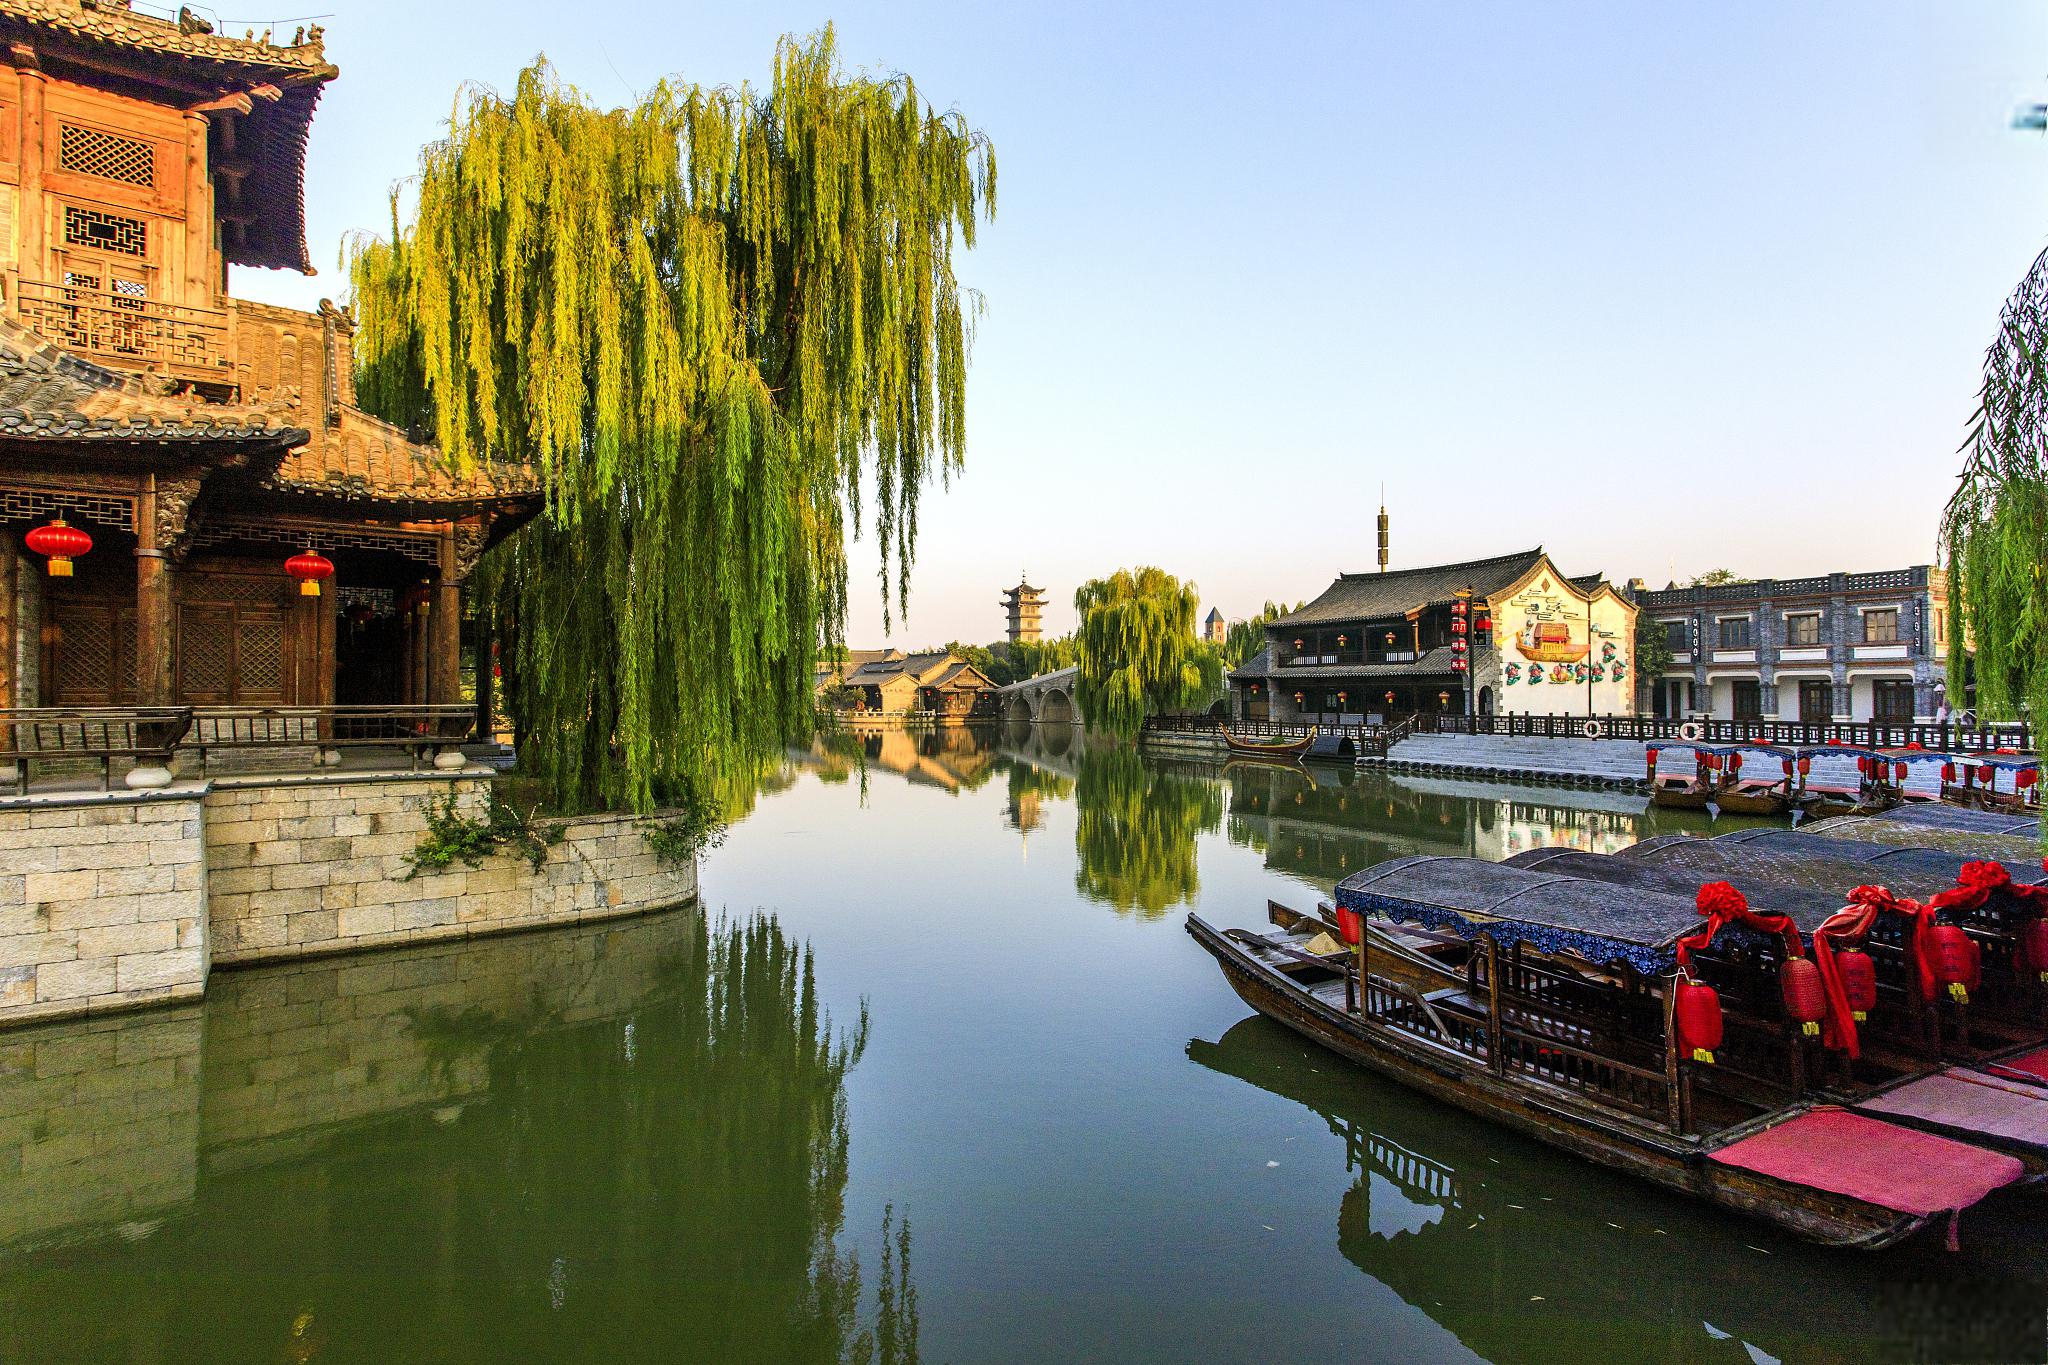 北塘古镇旅游攻略 北塘古镇位于中国江苏省无锡市,是一个保存完好的